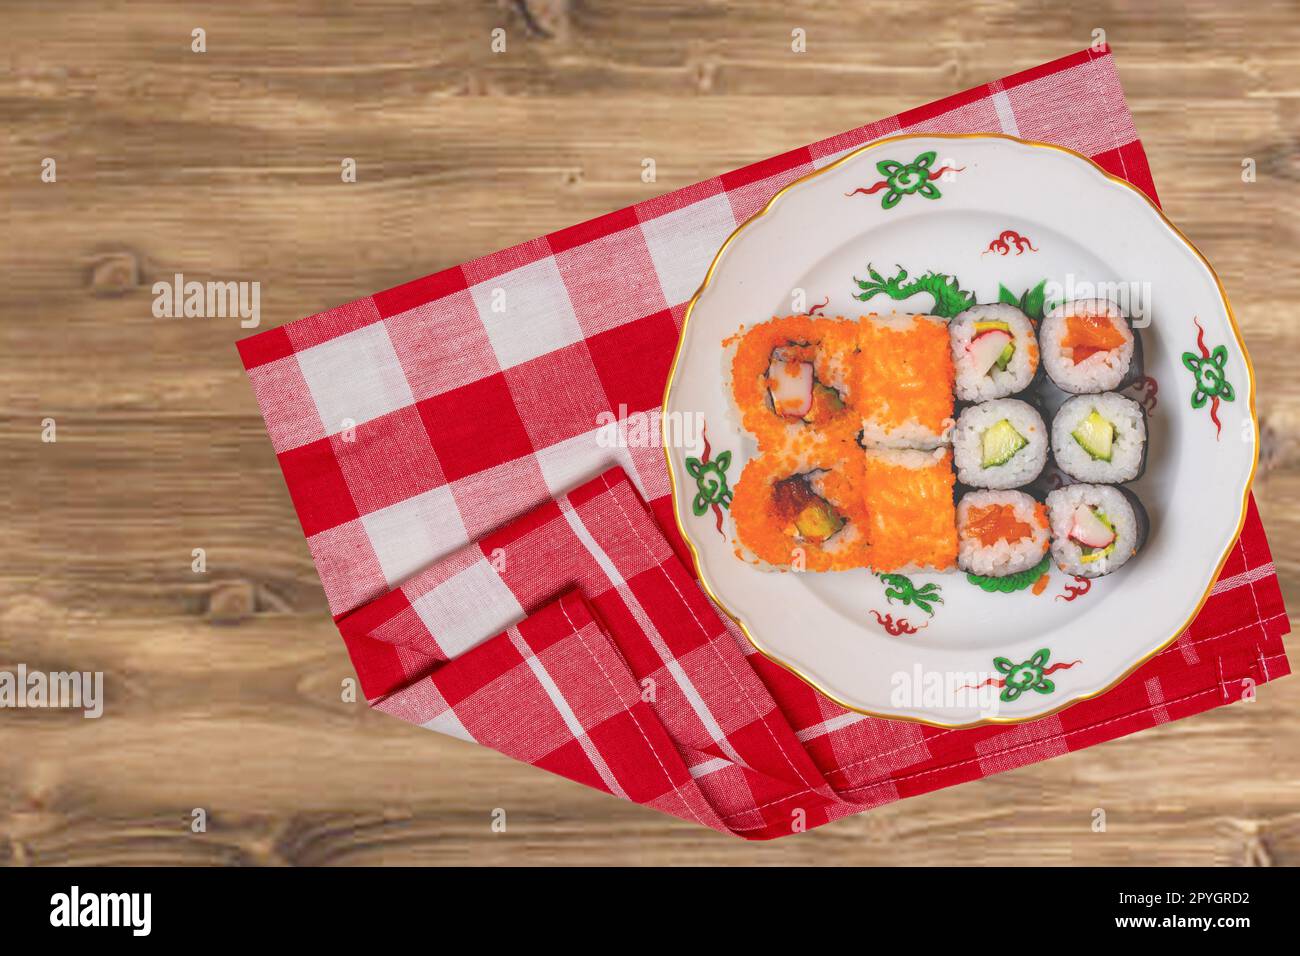 Menu traditionnel de sushis japonais. Divers types de rouleaux de sushi au saumon, sashimi servis sur une assiette colorée sur une serviette à carreaux rouge sur une table rustique. Vue de dessus. Espace. Banque D'Images